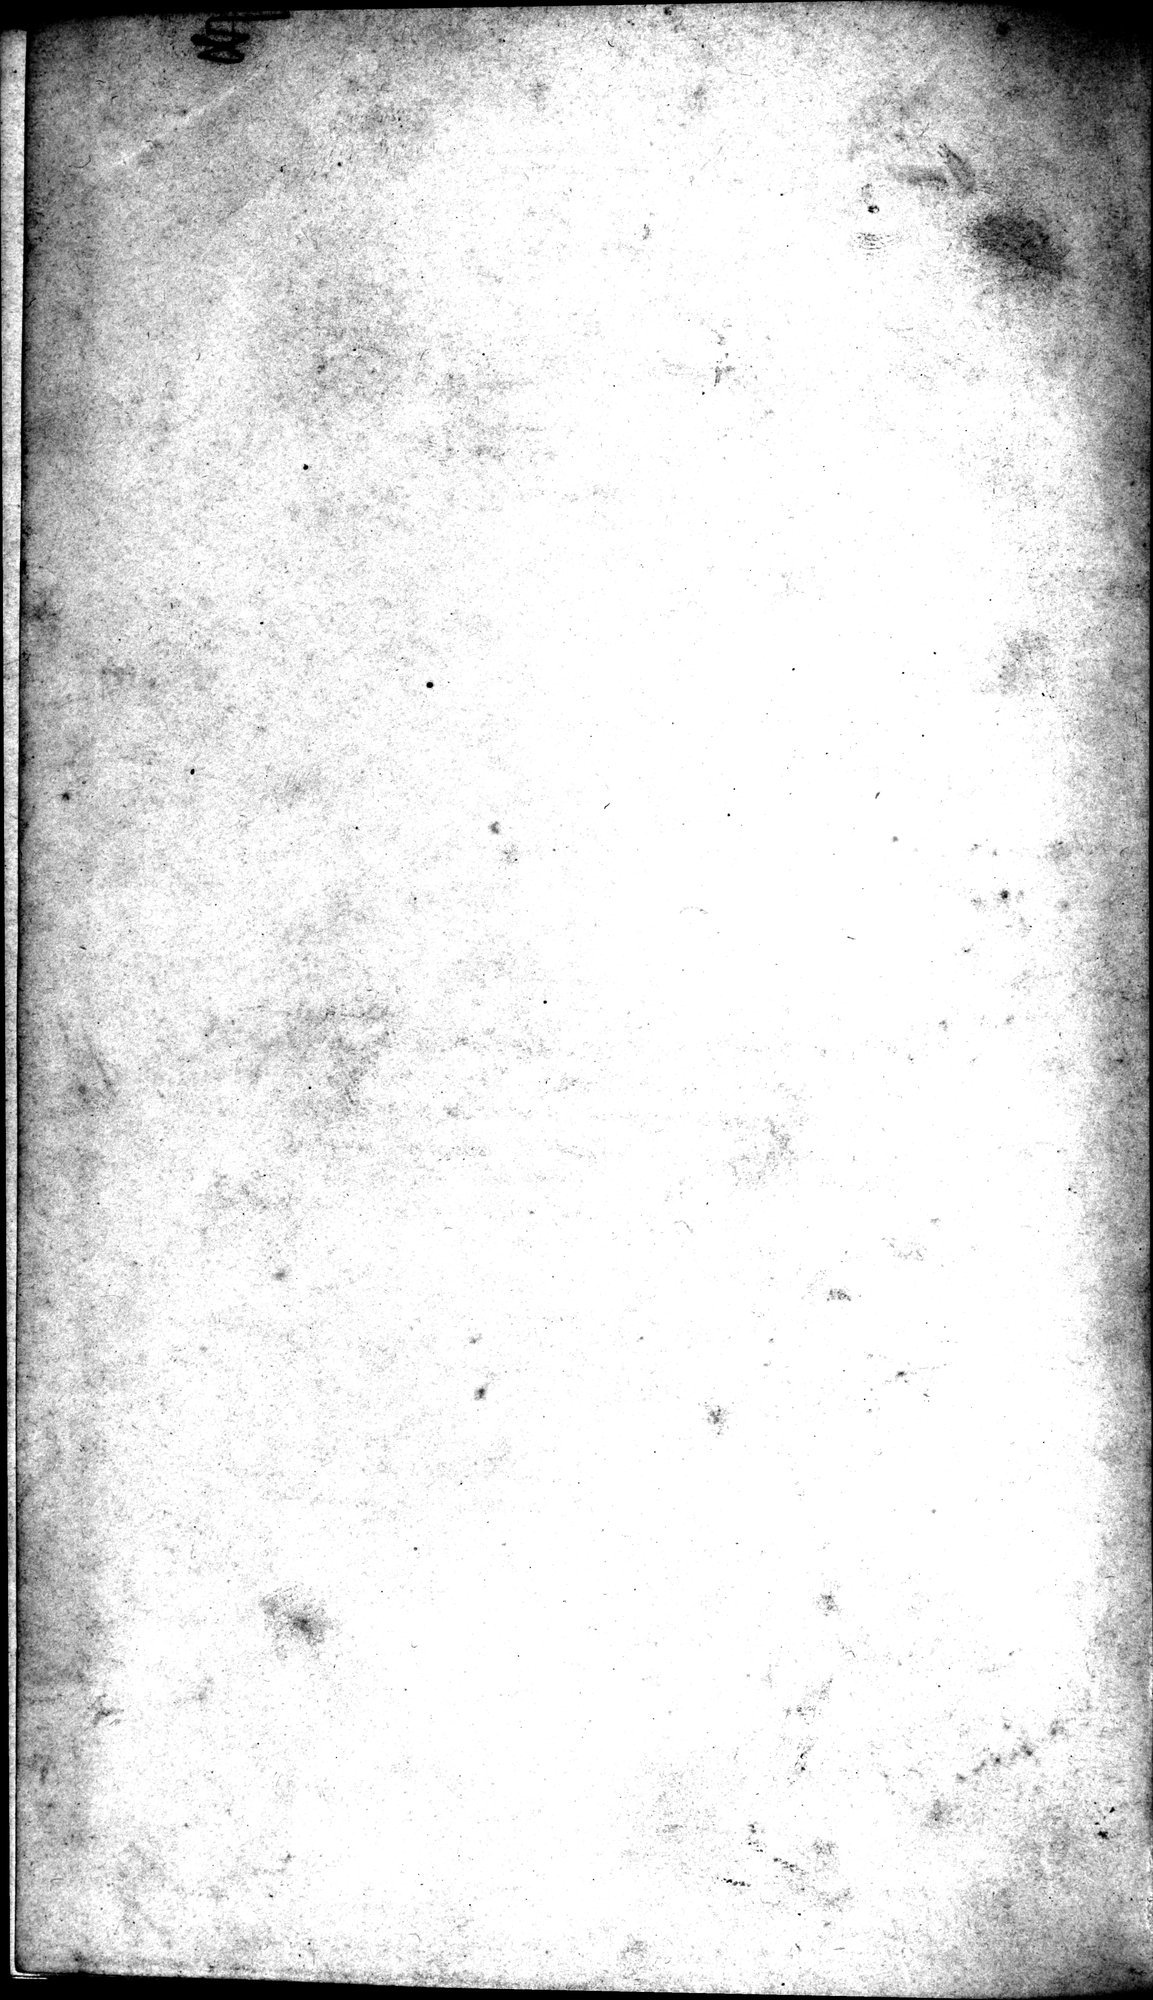 Un traité manichéen retrouvé en Chine : vol.1 / Page 378 (Grayscale High Resolution Image)